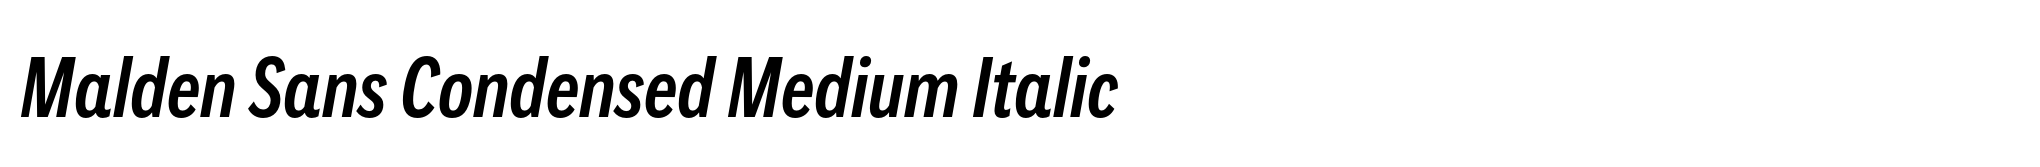 Malden Sans Condensed Medium Italic image